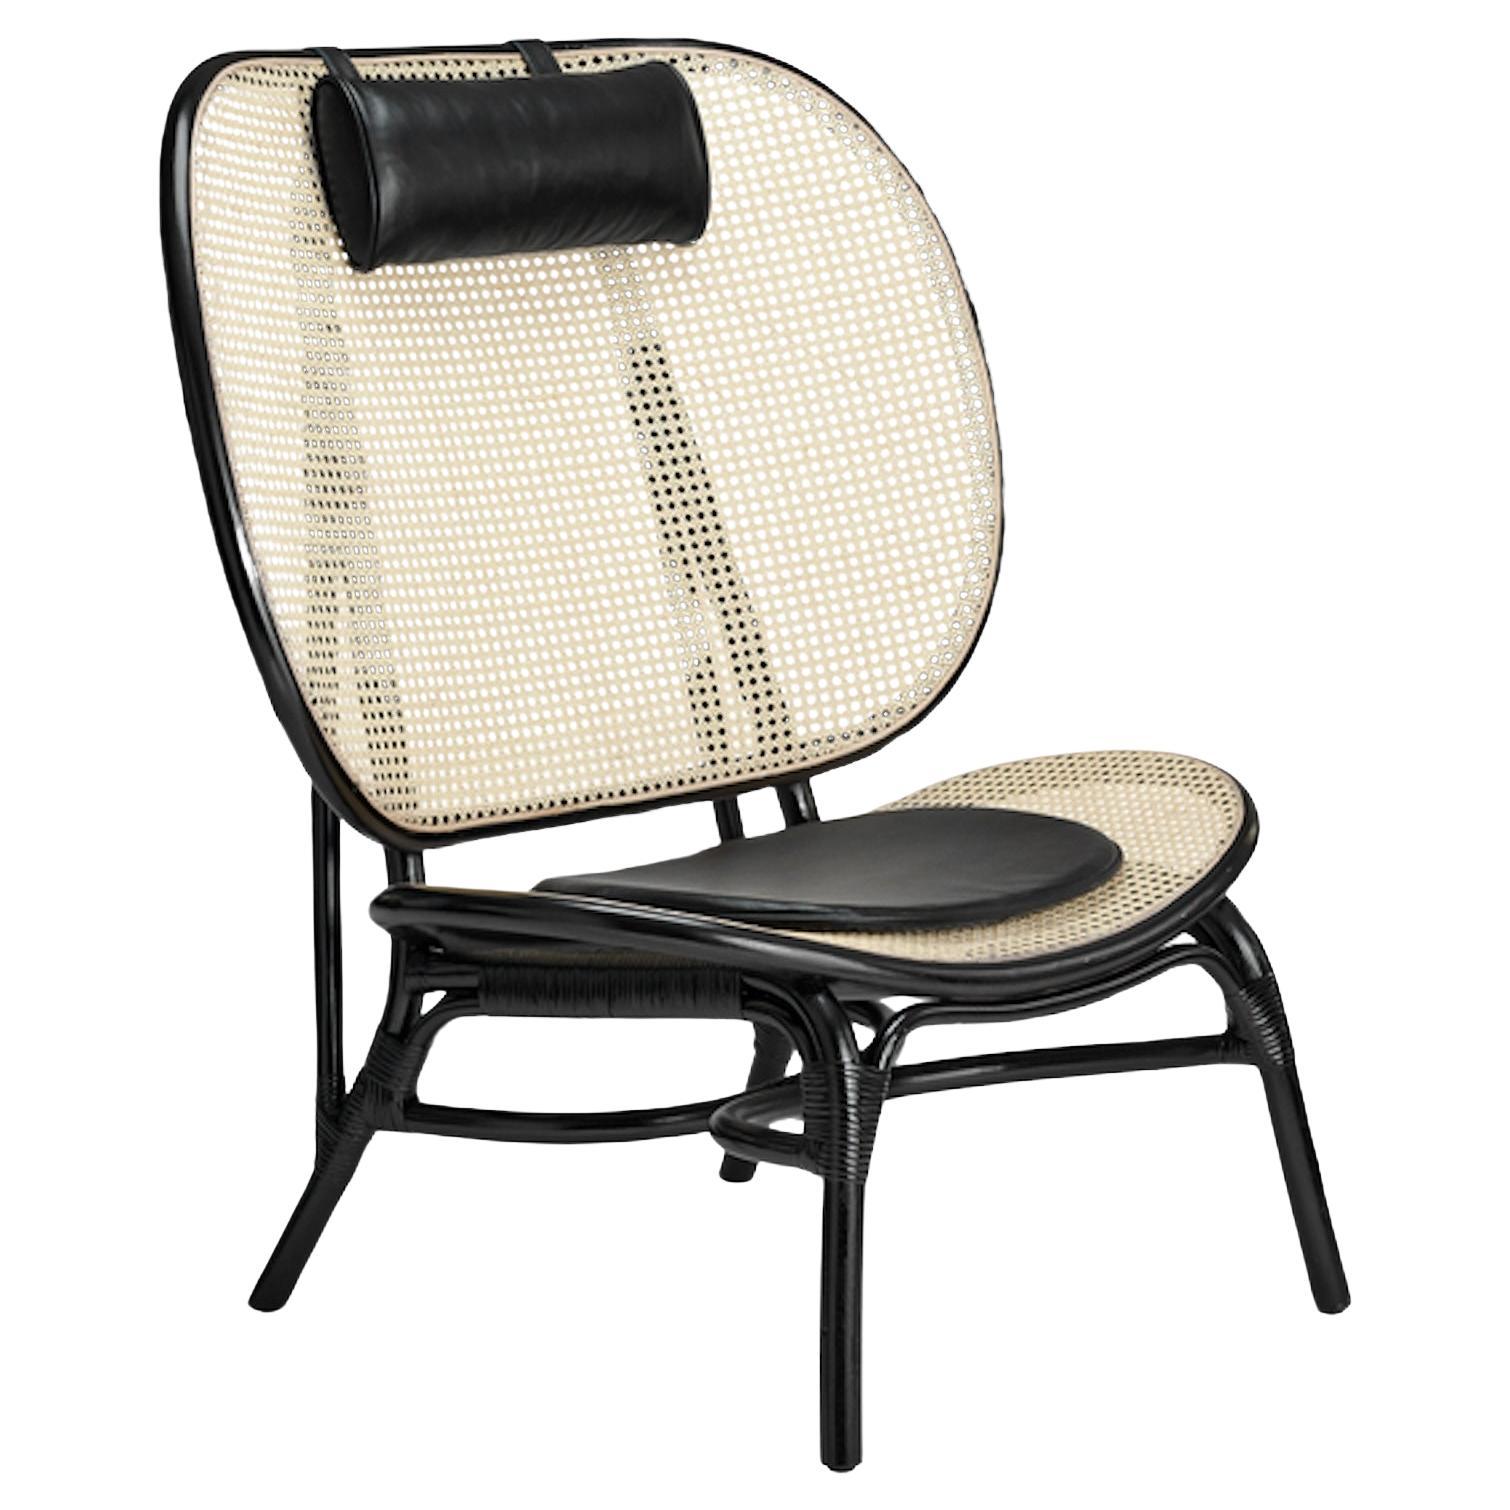 La chaise Nomad est une interprétation nordique de la traditionnelle chaise marocaine en osier.
Fabriqué par des artisans qualifiés, il se compose d'une large assise et d'un dossier fabriqués à partir de deux cadres en bambou moulé avec incrustation